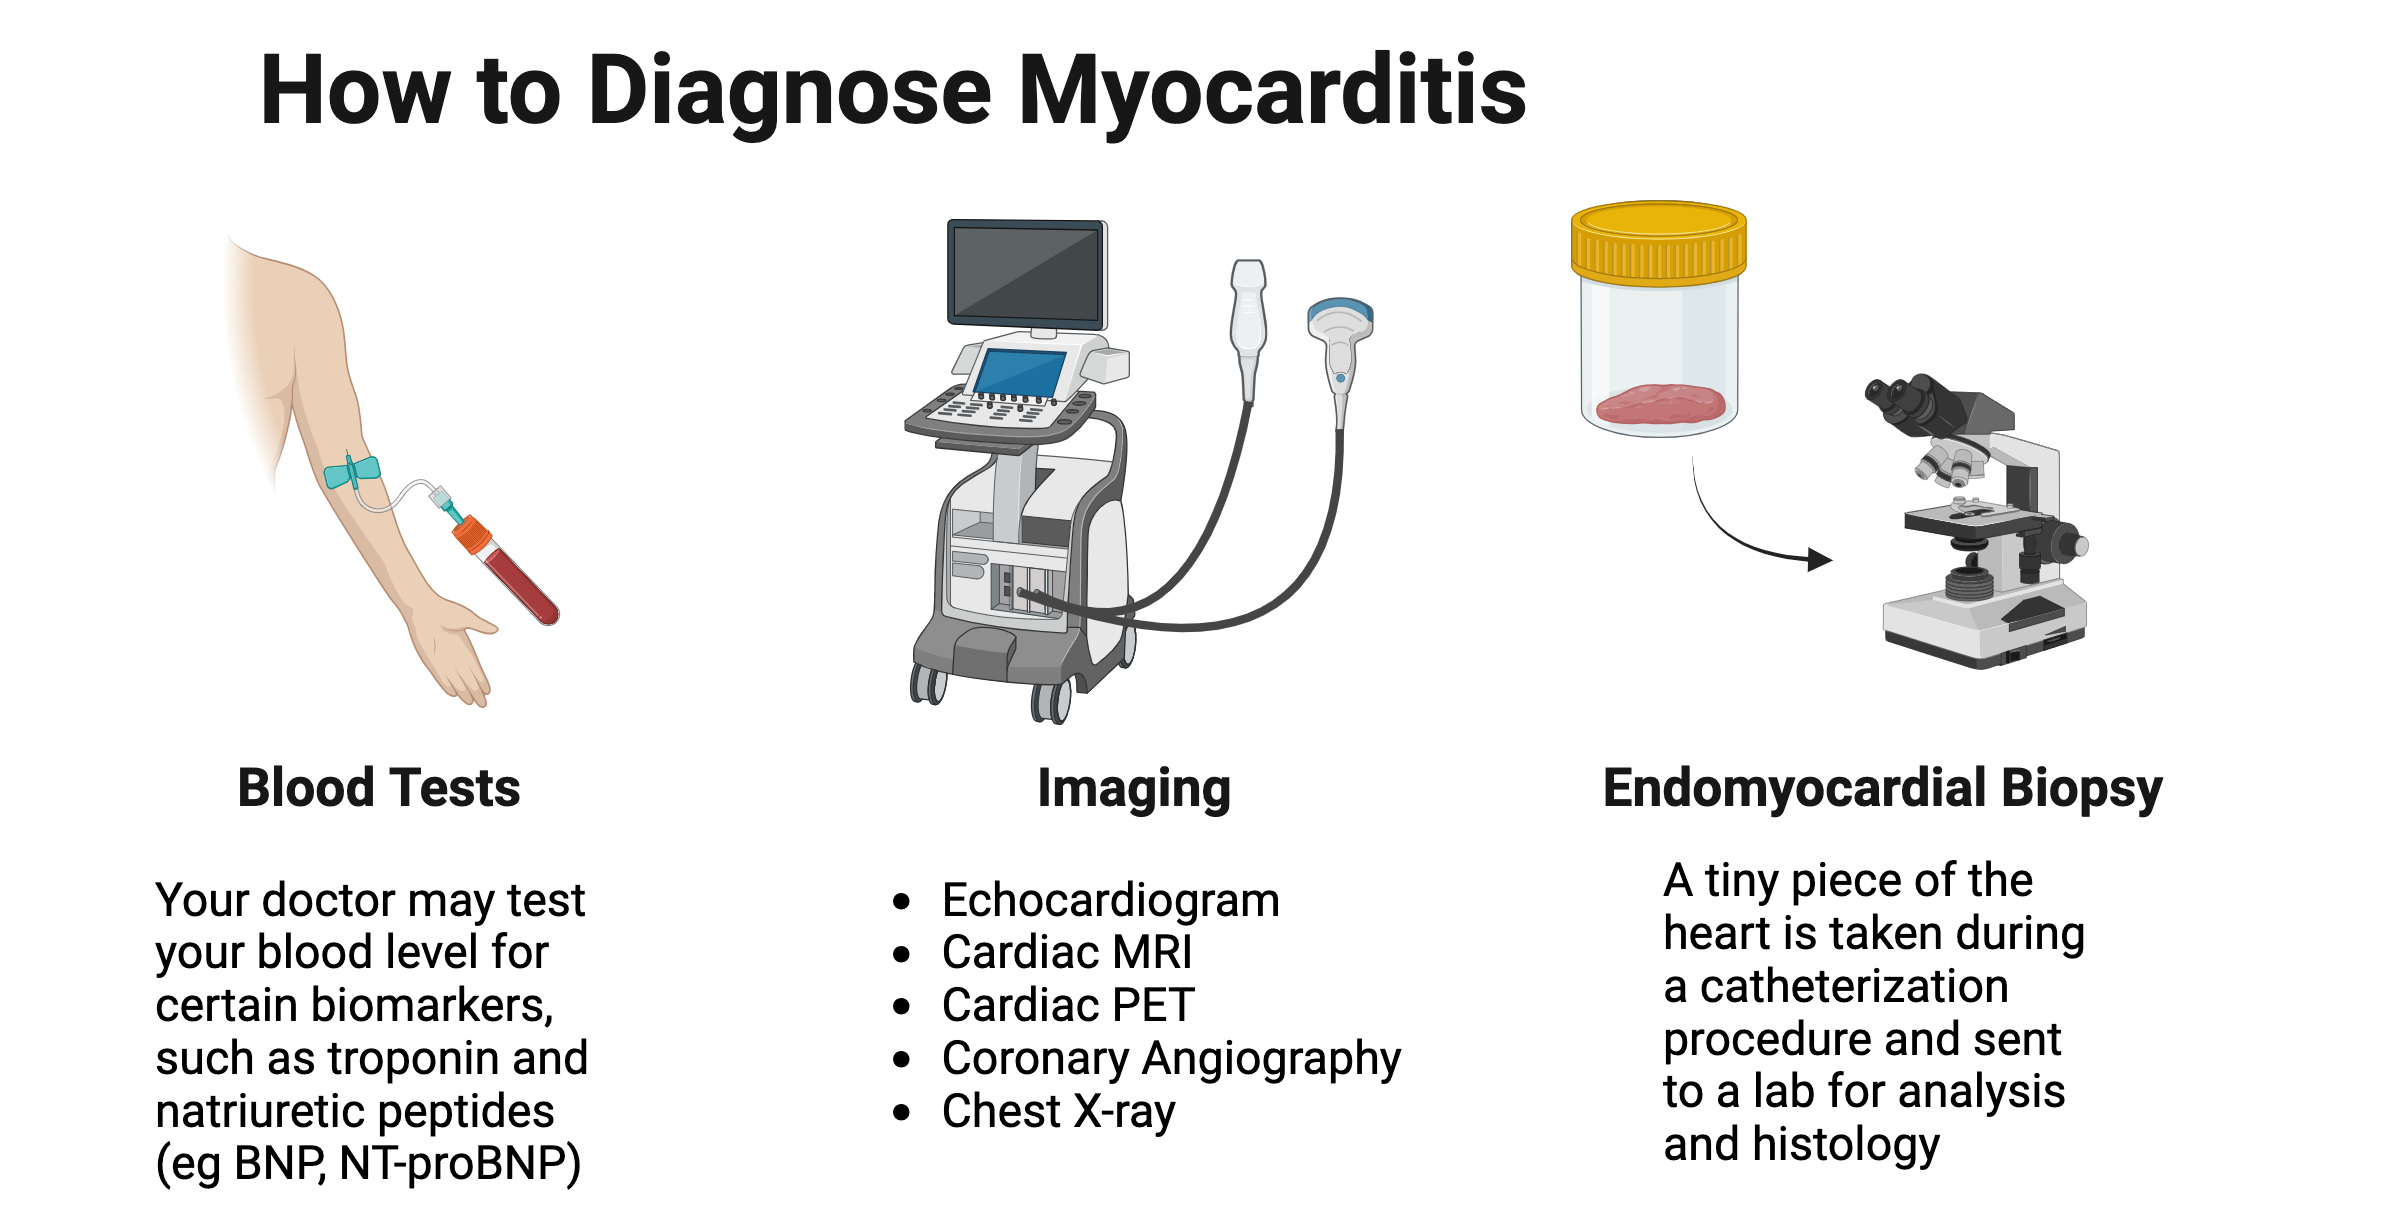 Diagnosis of myocarditis